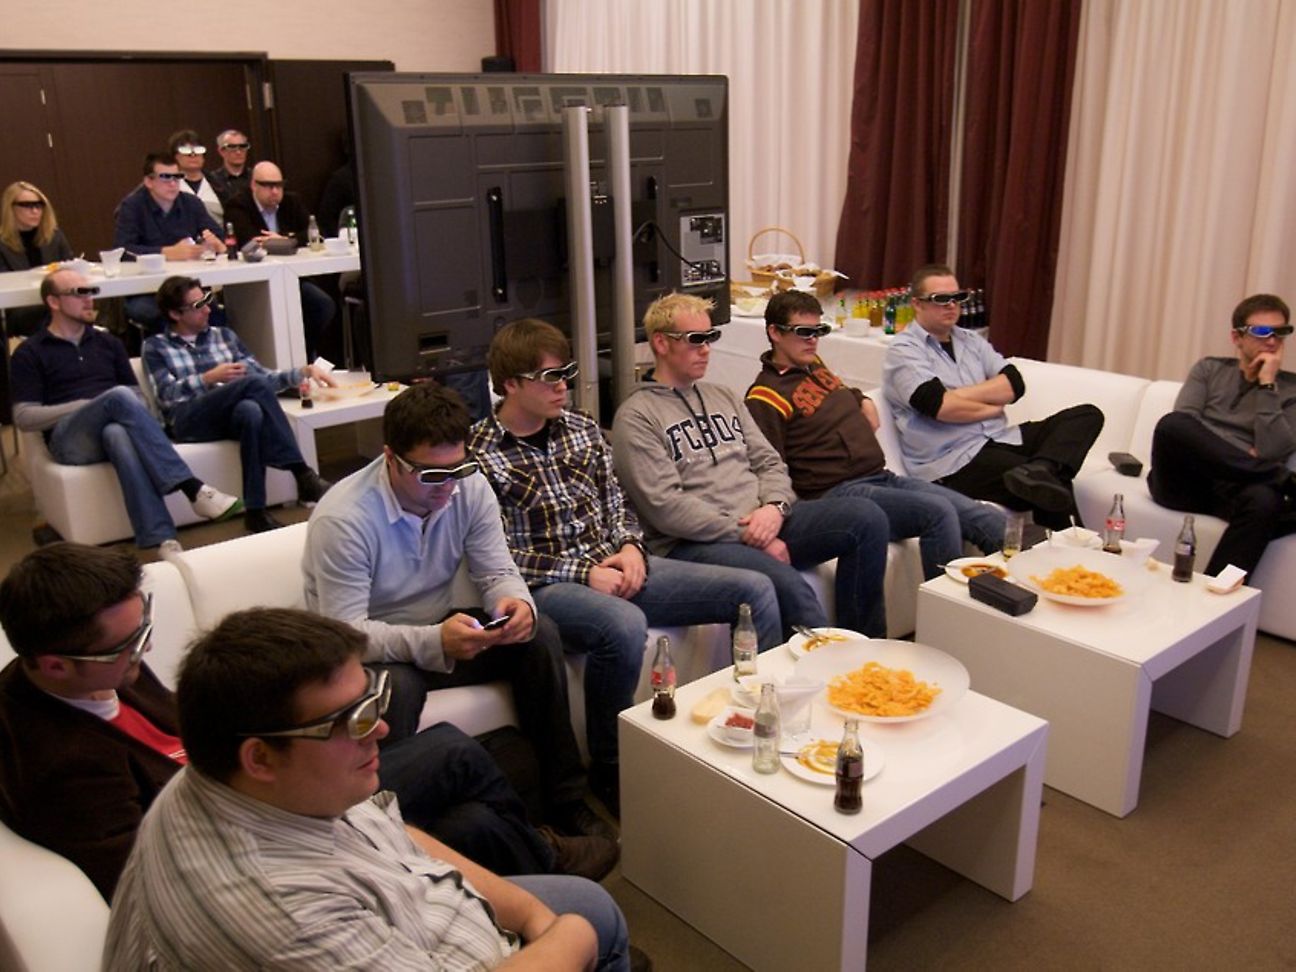 Fußball live in 3D erste Eindrücke Deutsche Telekom